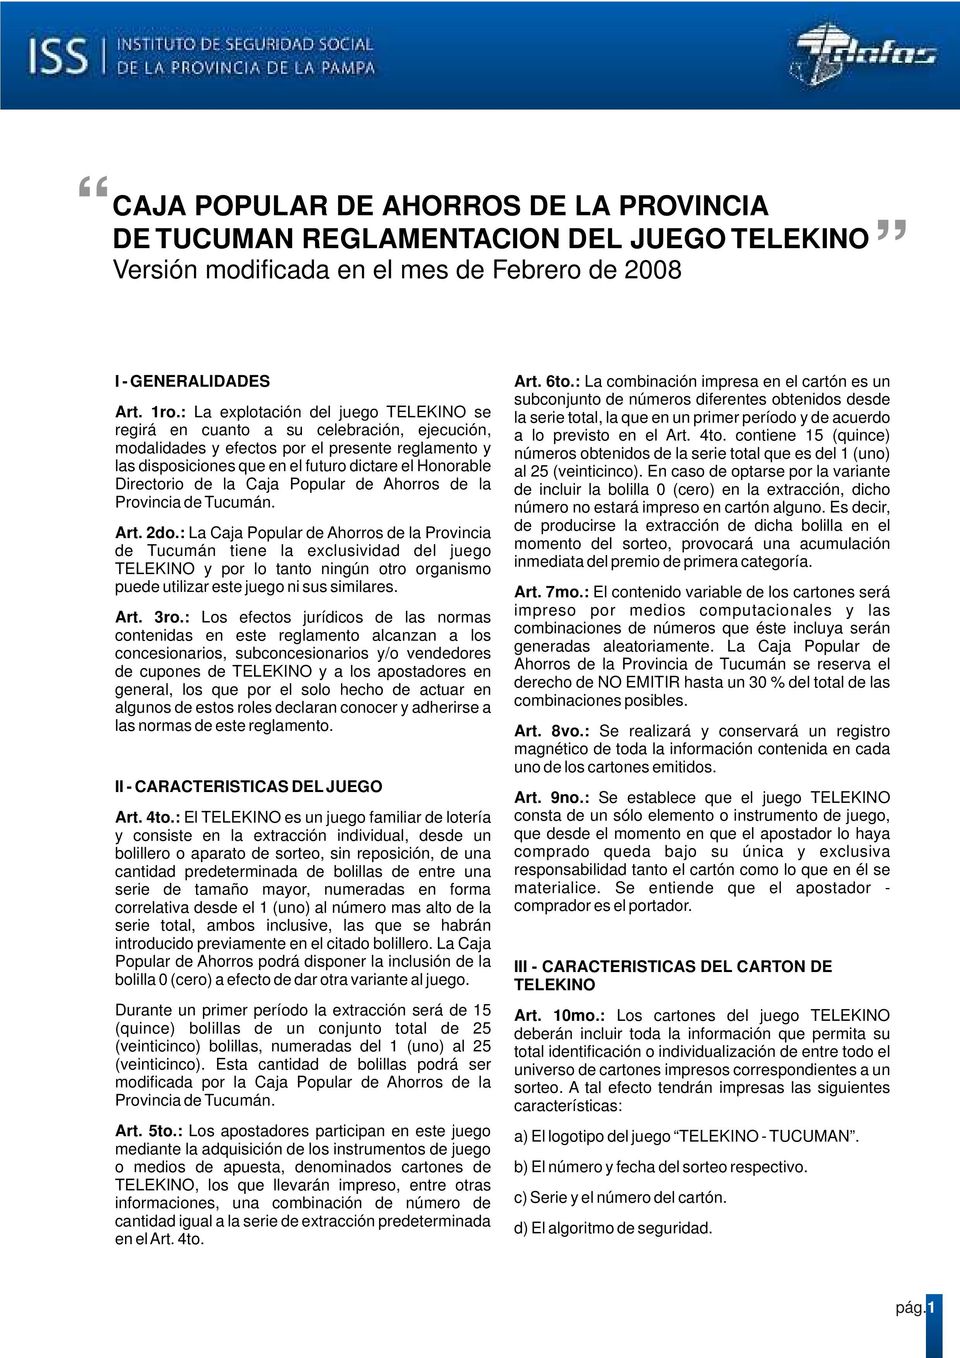 Directorio de la Caja Popular de Ahorros de la Provincia de Tucumán. Art. 2do.